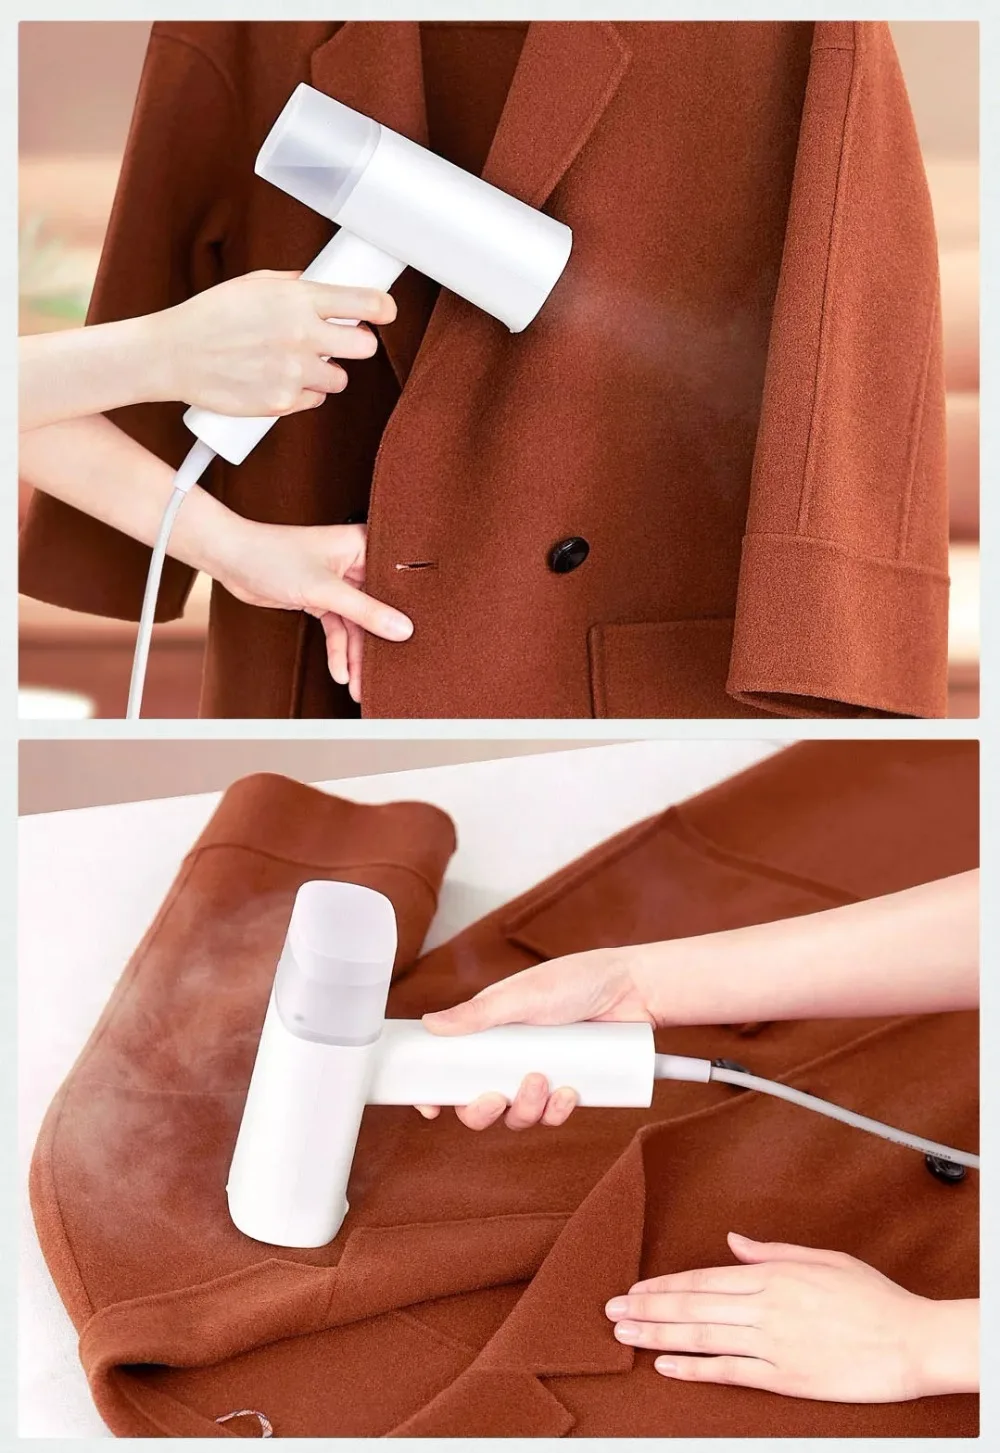 Ручной паровой утюг Xiaomi Mijia Zajia, умная Паровая нагревательная машина, Электрический Утюг, ручная гладильная машина для одежды